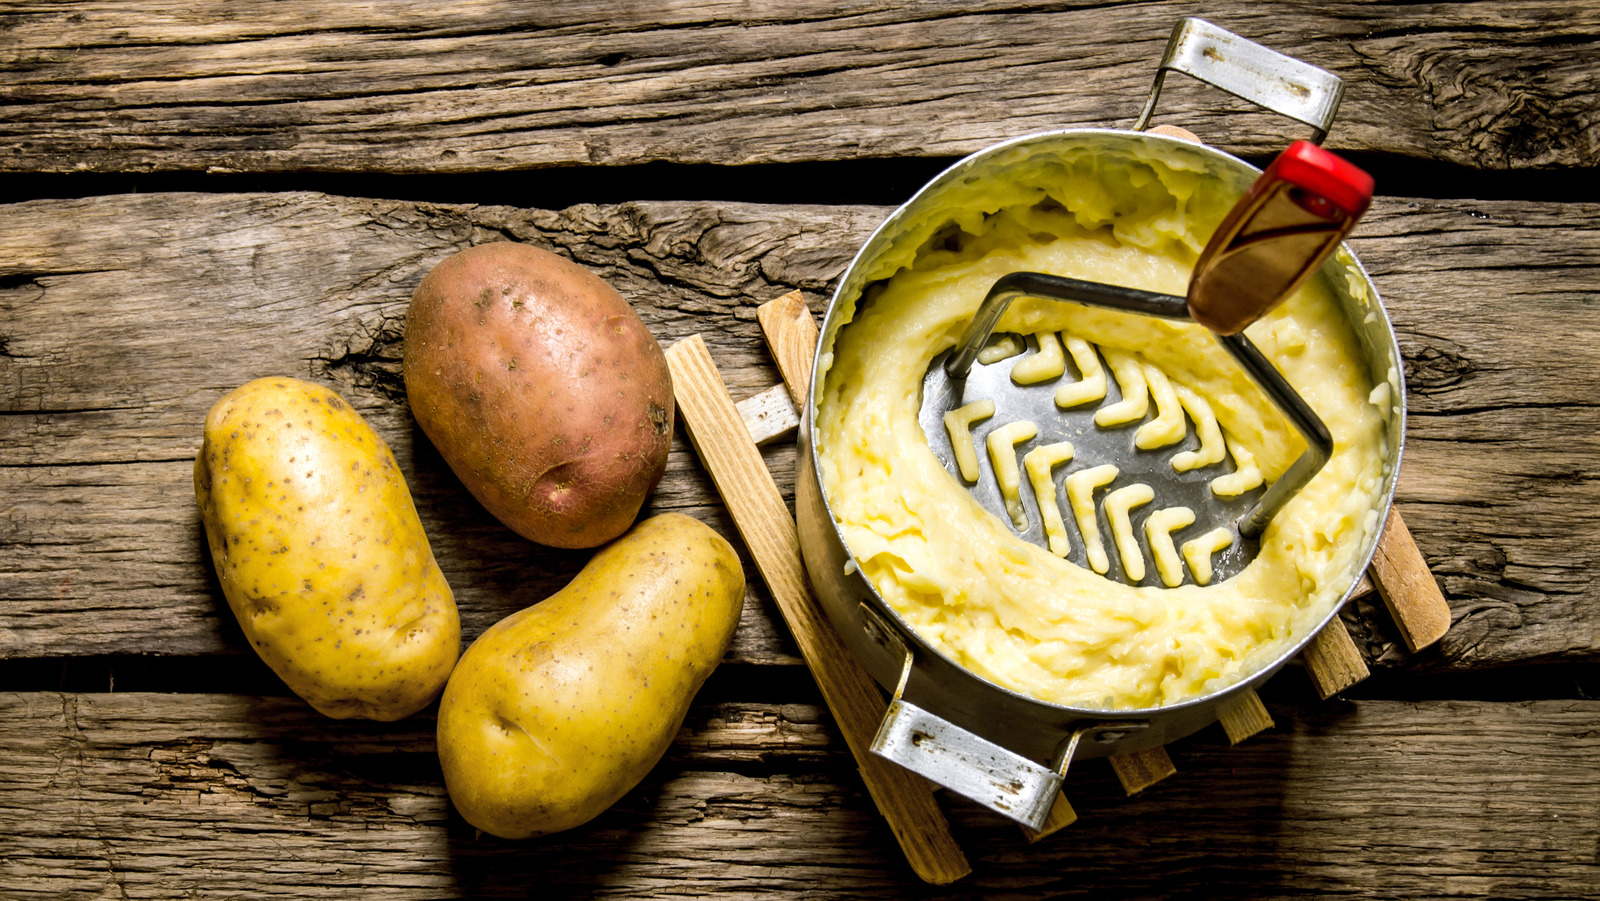 Potato Masher For Kitchen And Kitchen Tool Food Smasher For Bean Sweet  Potato Fruits Avocado Potato